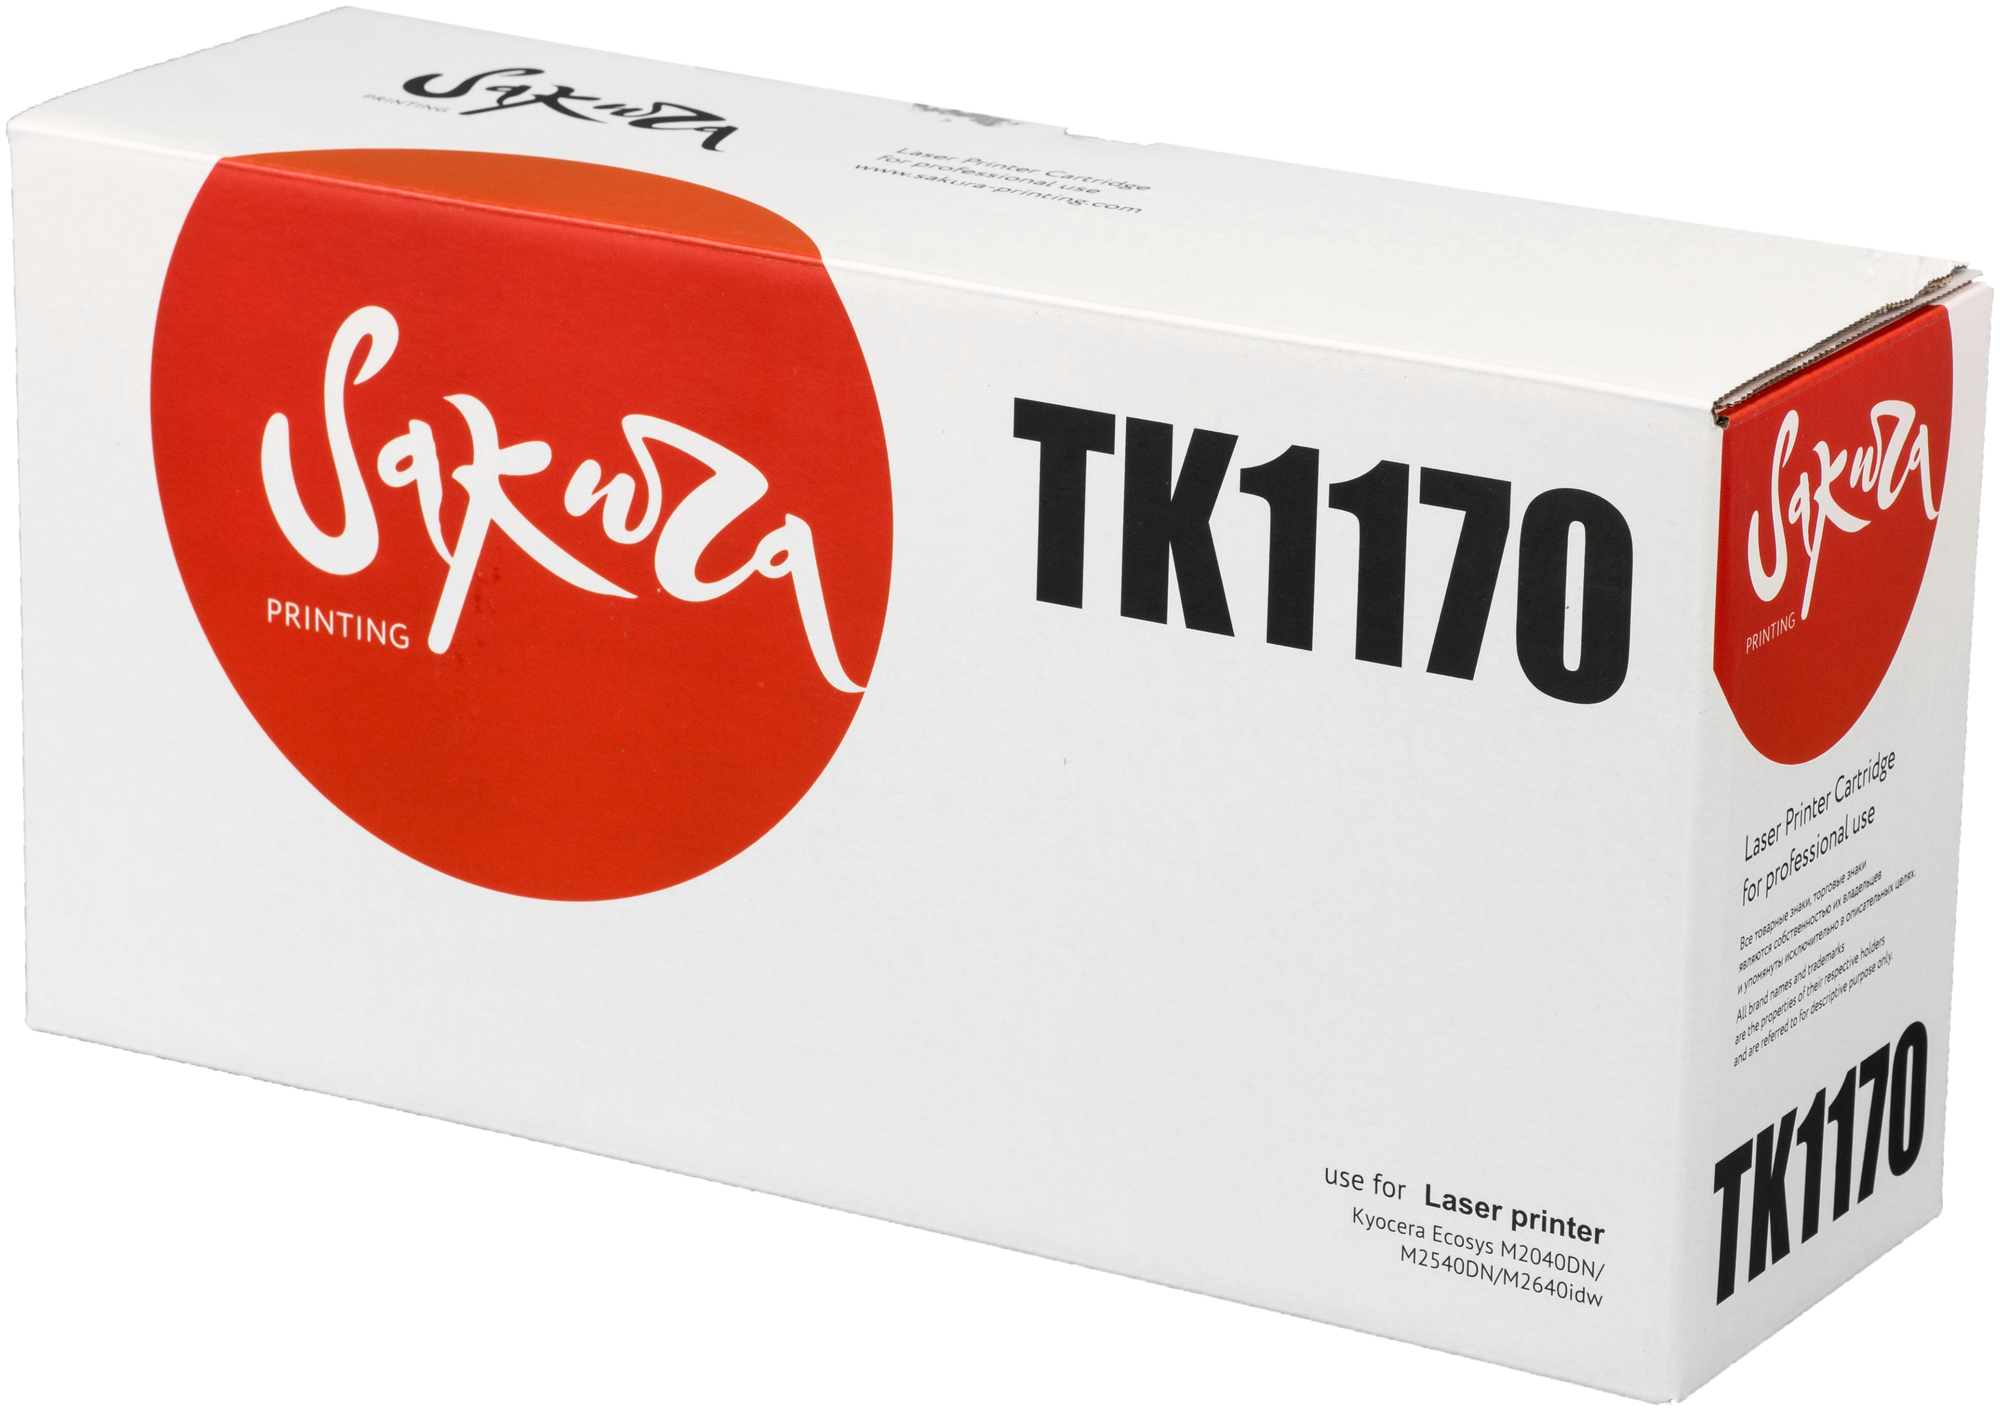 Картридж Sakura TK1170 для Kyocera Mita ECOSYS m2040dn m2540dn m2640idw